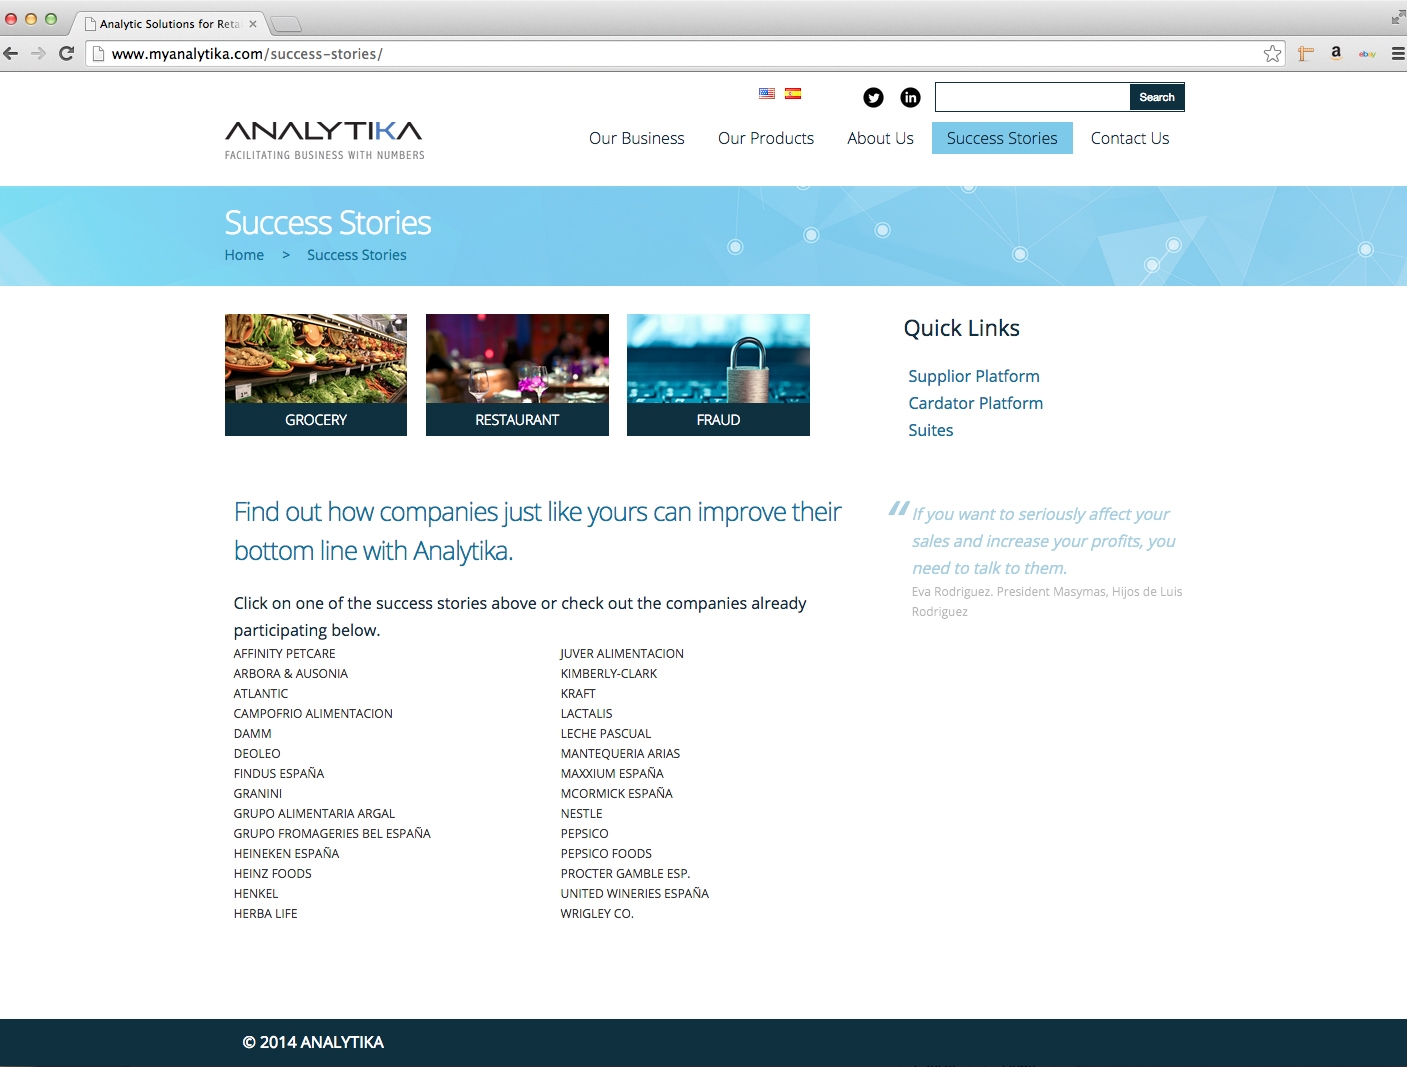 ANALYTIKA_SStories.jpg